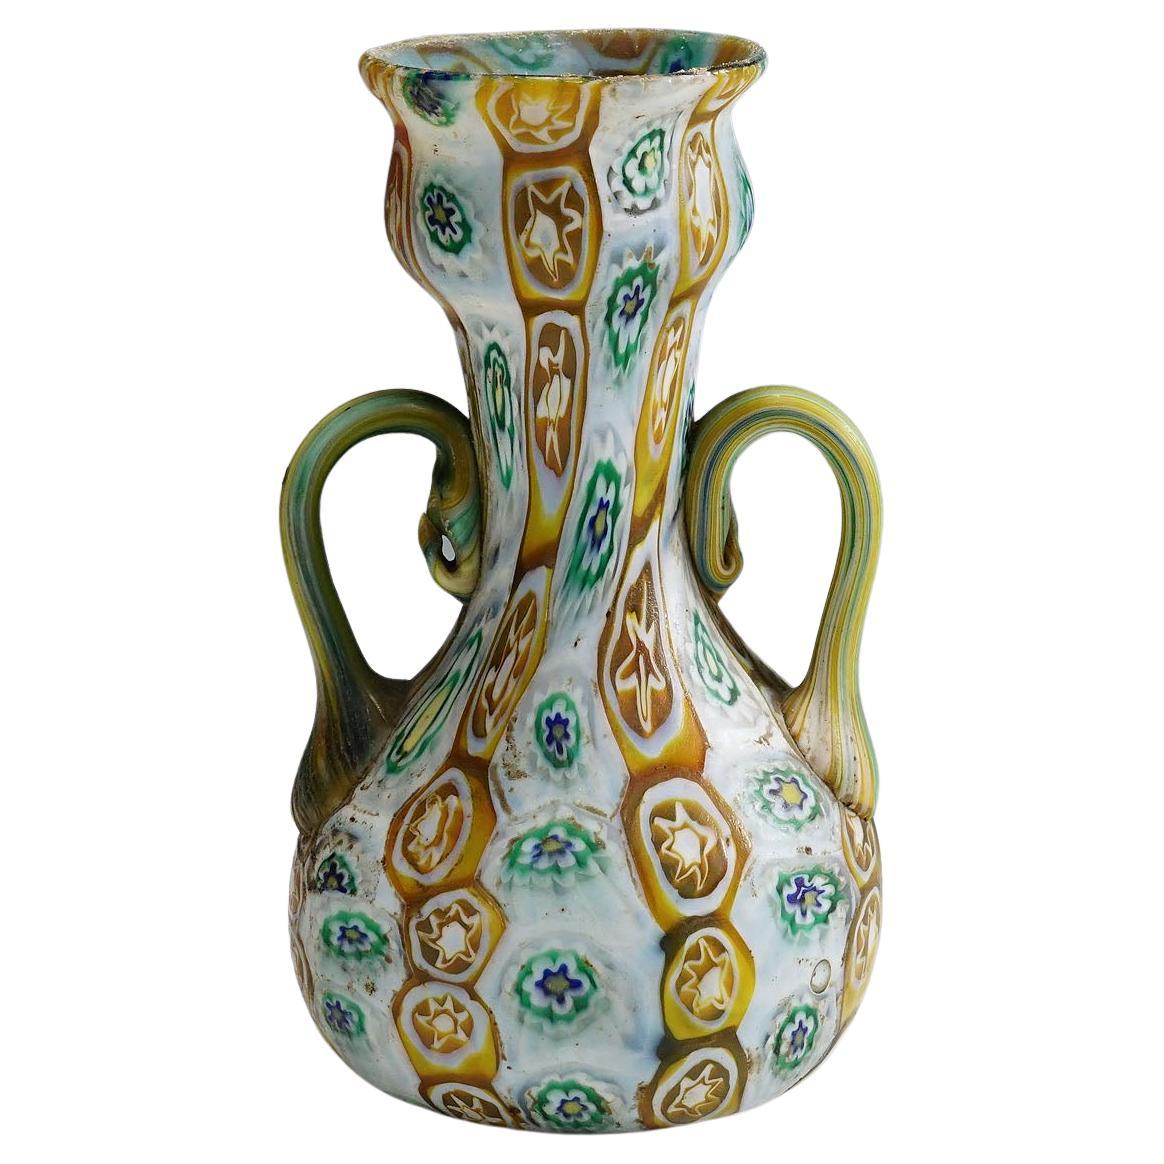 Antike Millefiori-Vase in Braun, Grün und Weiß, Fratelli Toso Murano 1910